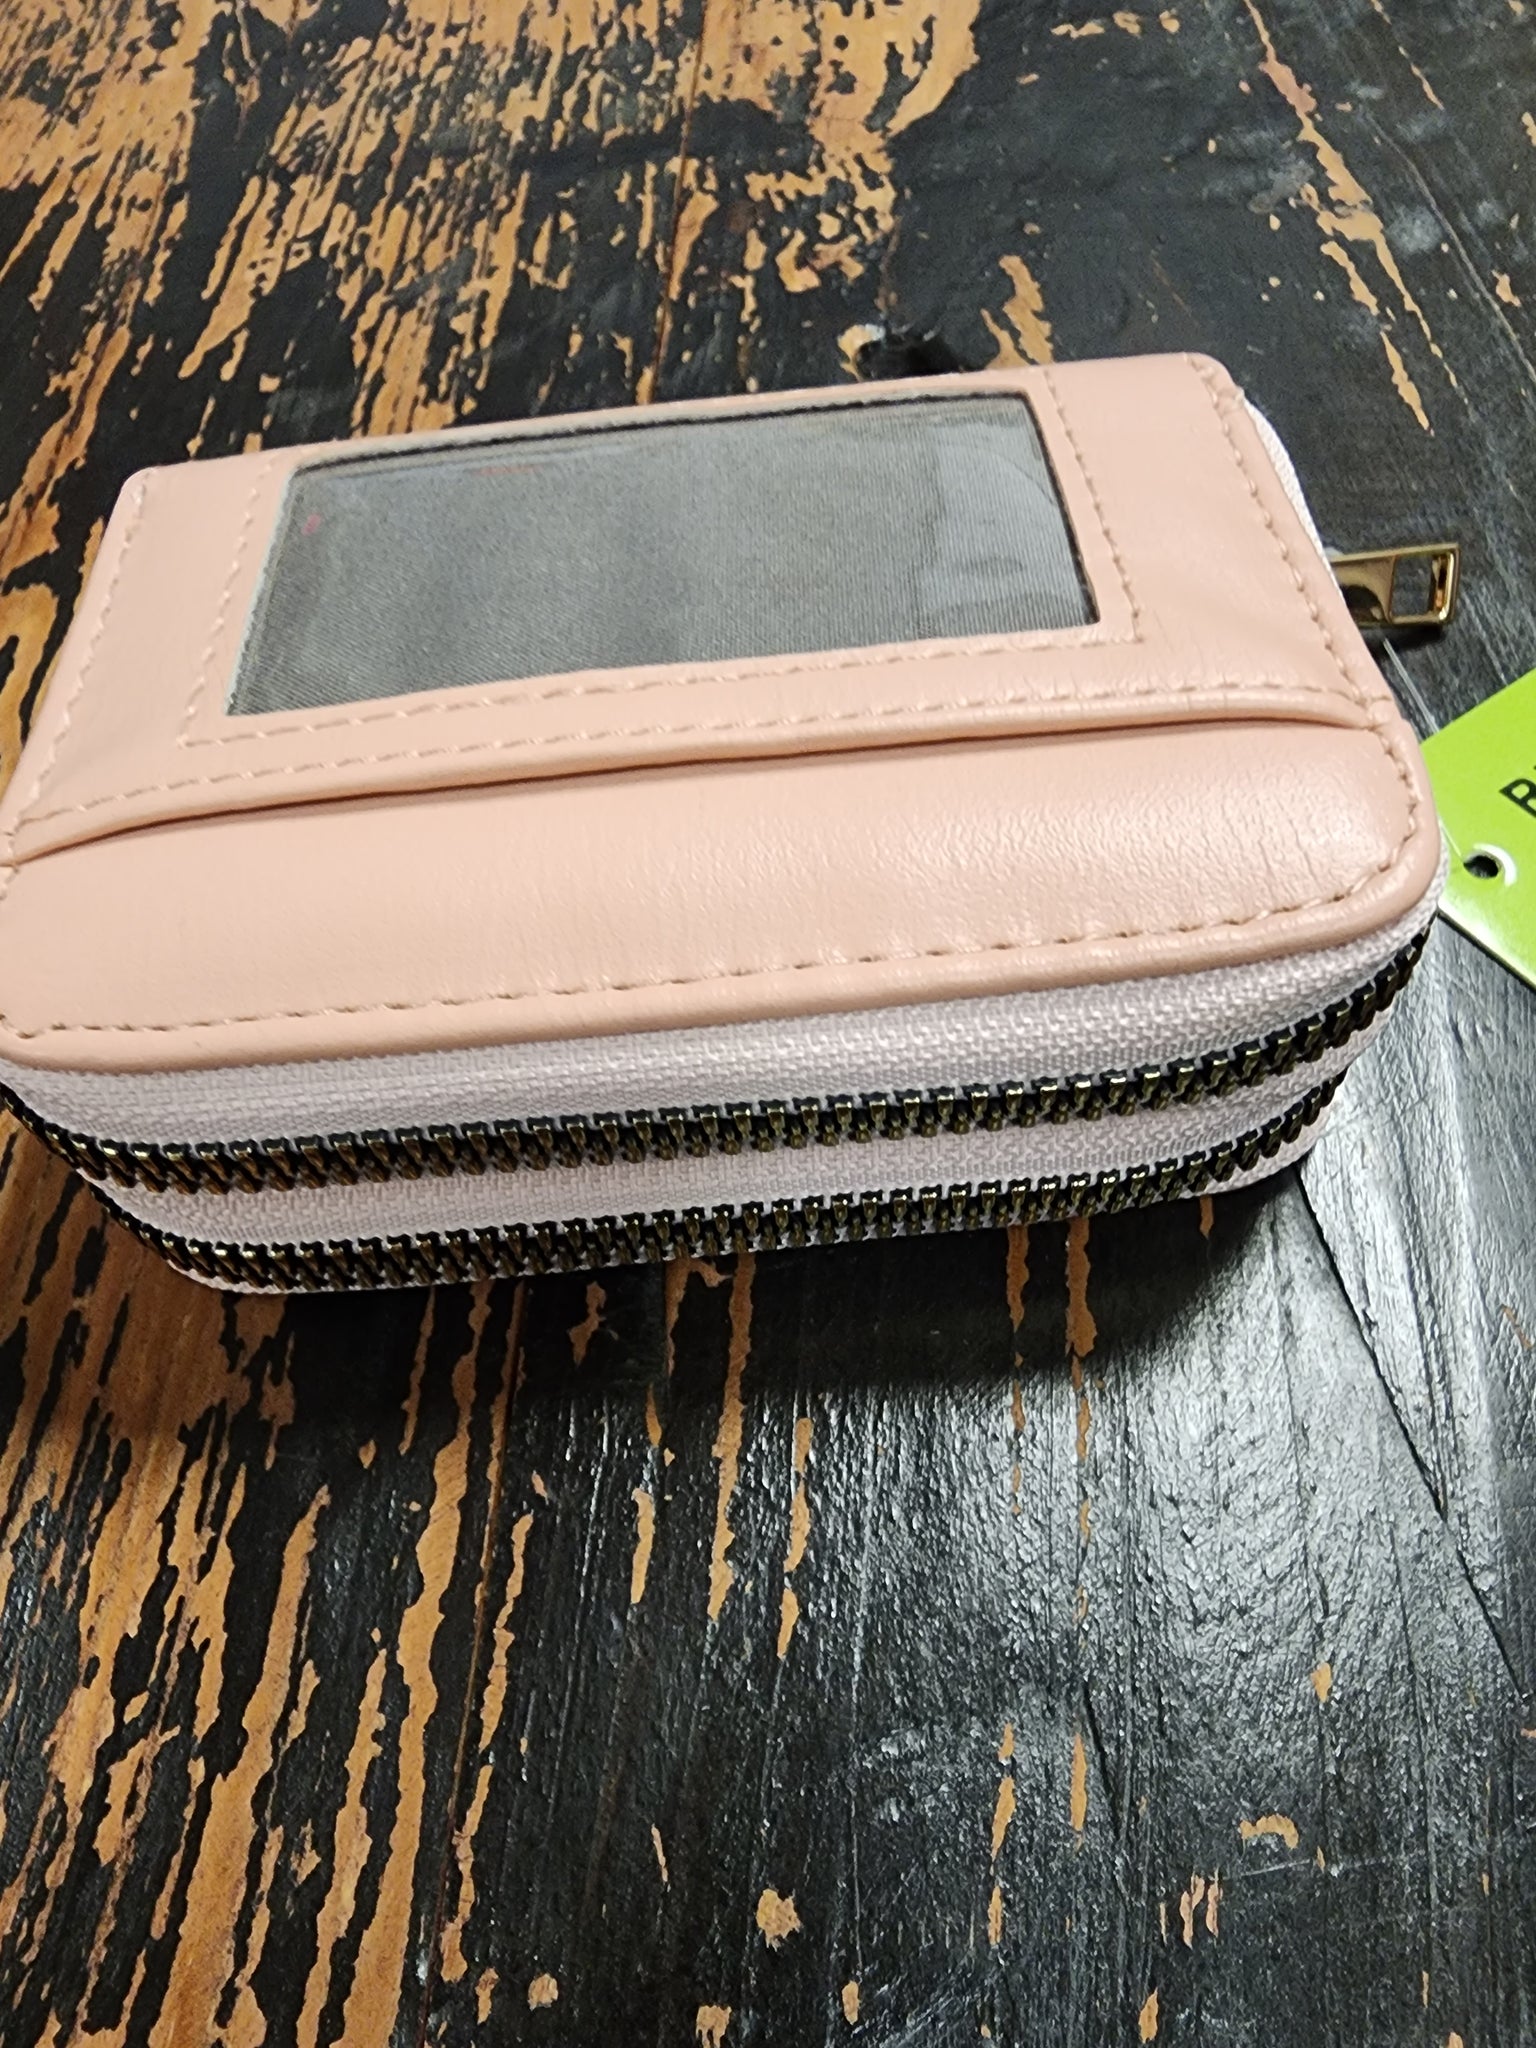 Acordian double zip small wallet